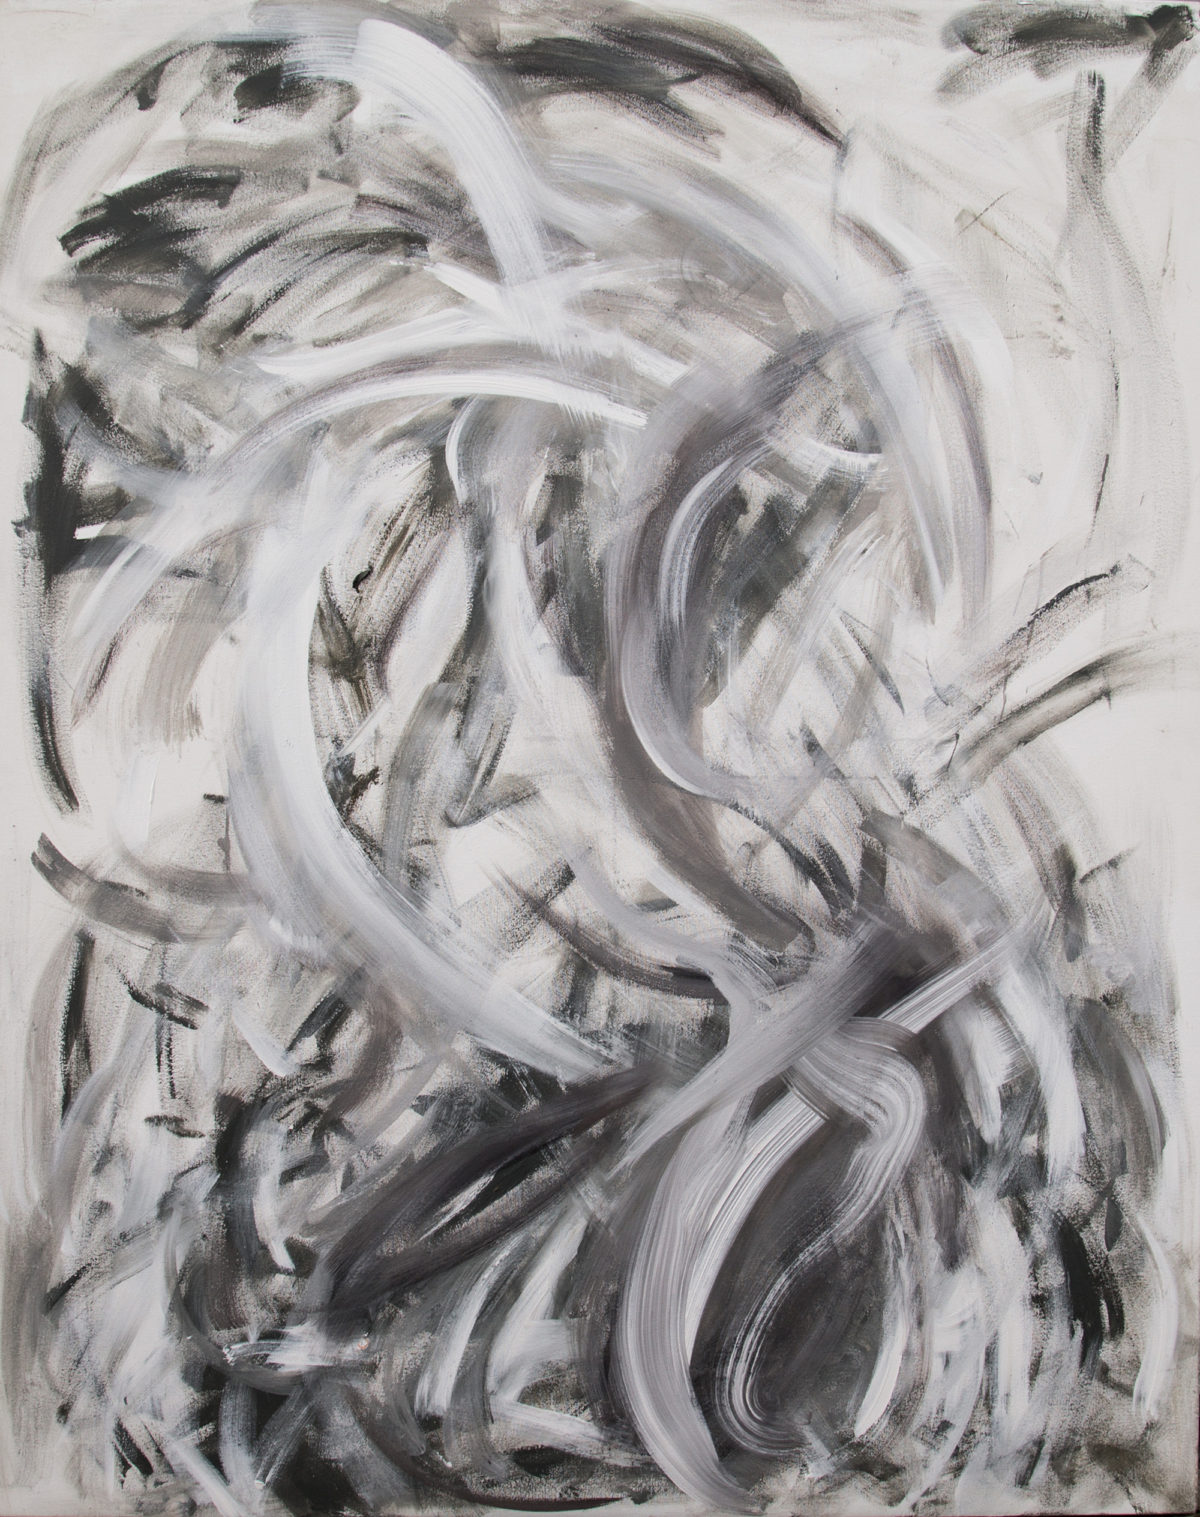 Oil on Canvas, with textures of concrete in grey colors -Ornella Gallo Di Fortuna Art